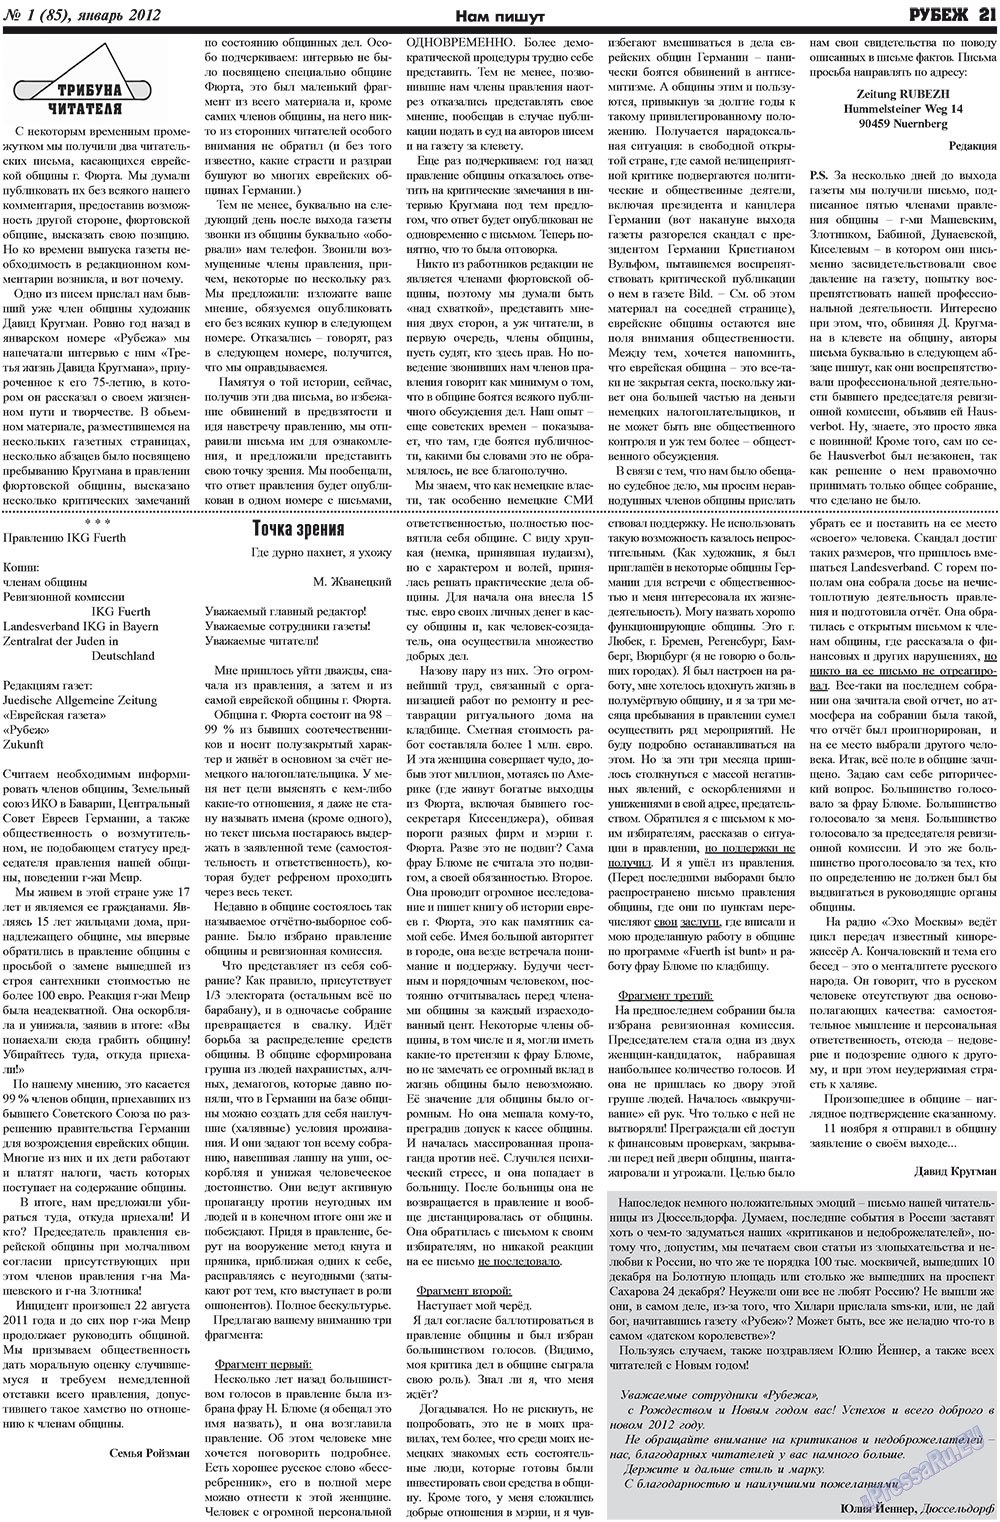 Рубеж (газета). 2012 год, номер 1, стр. 21